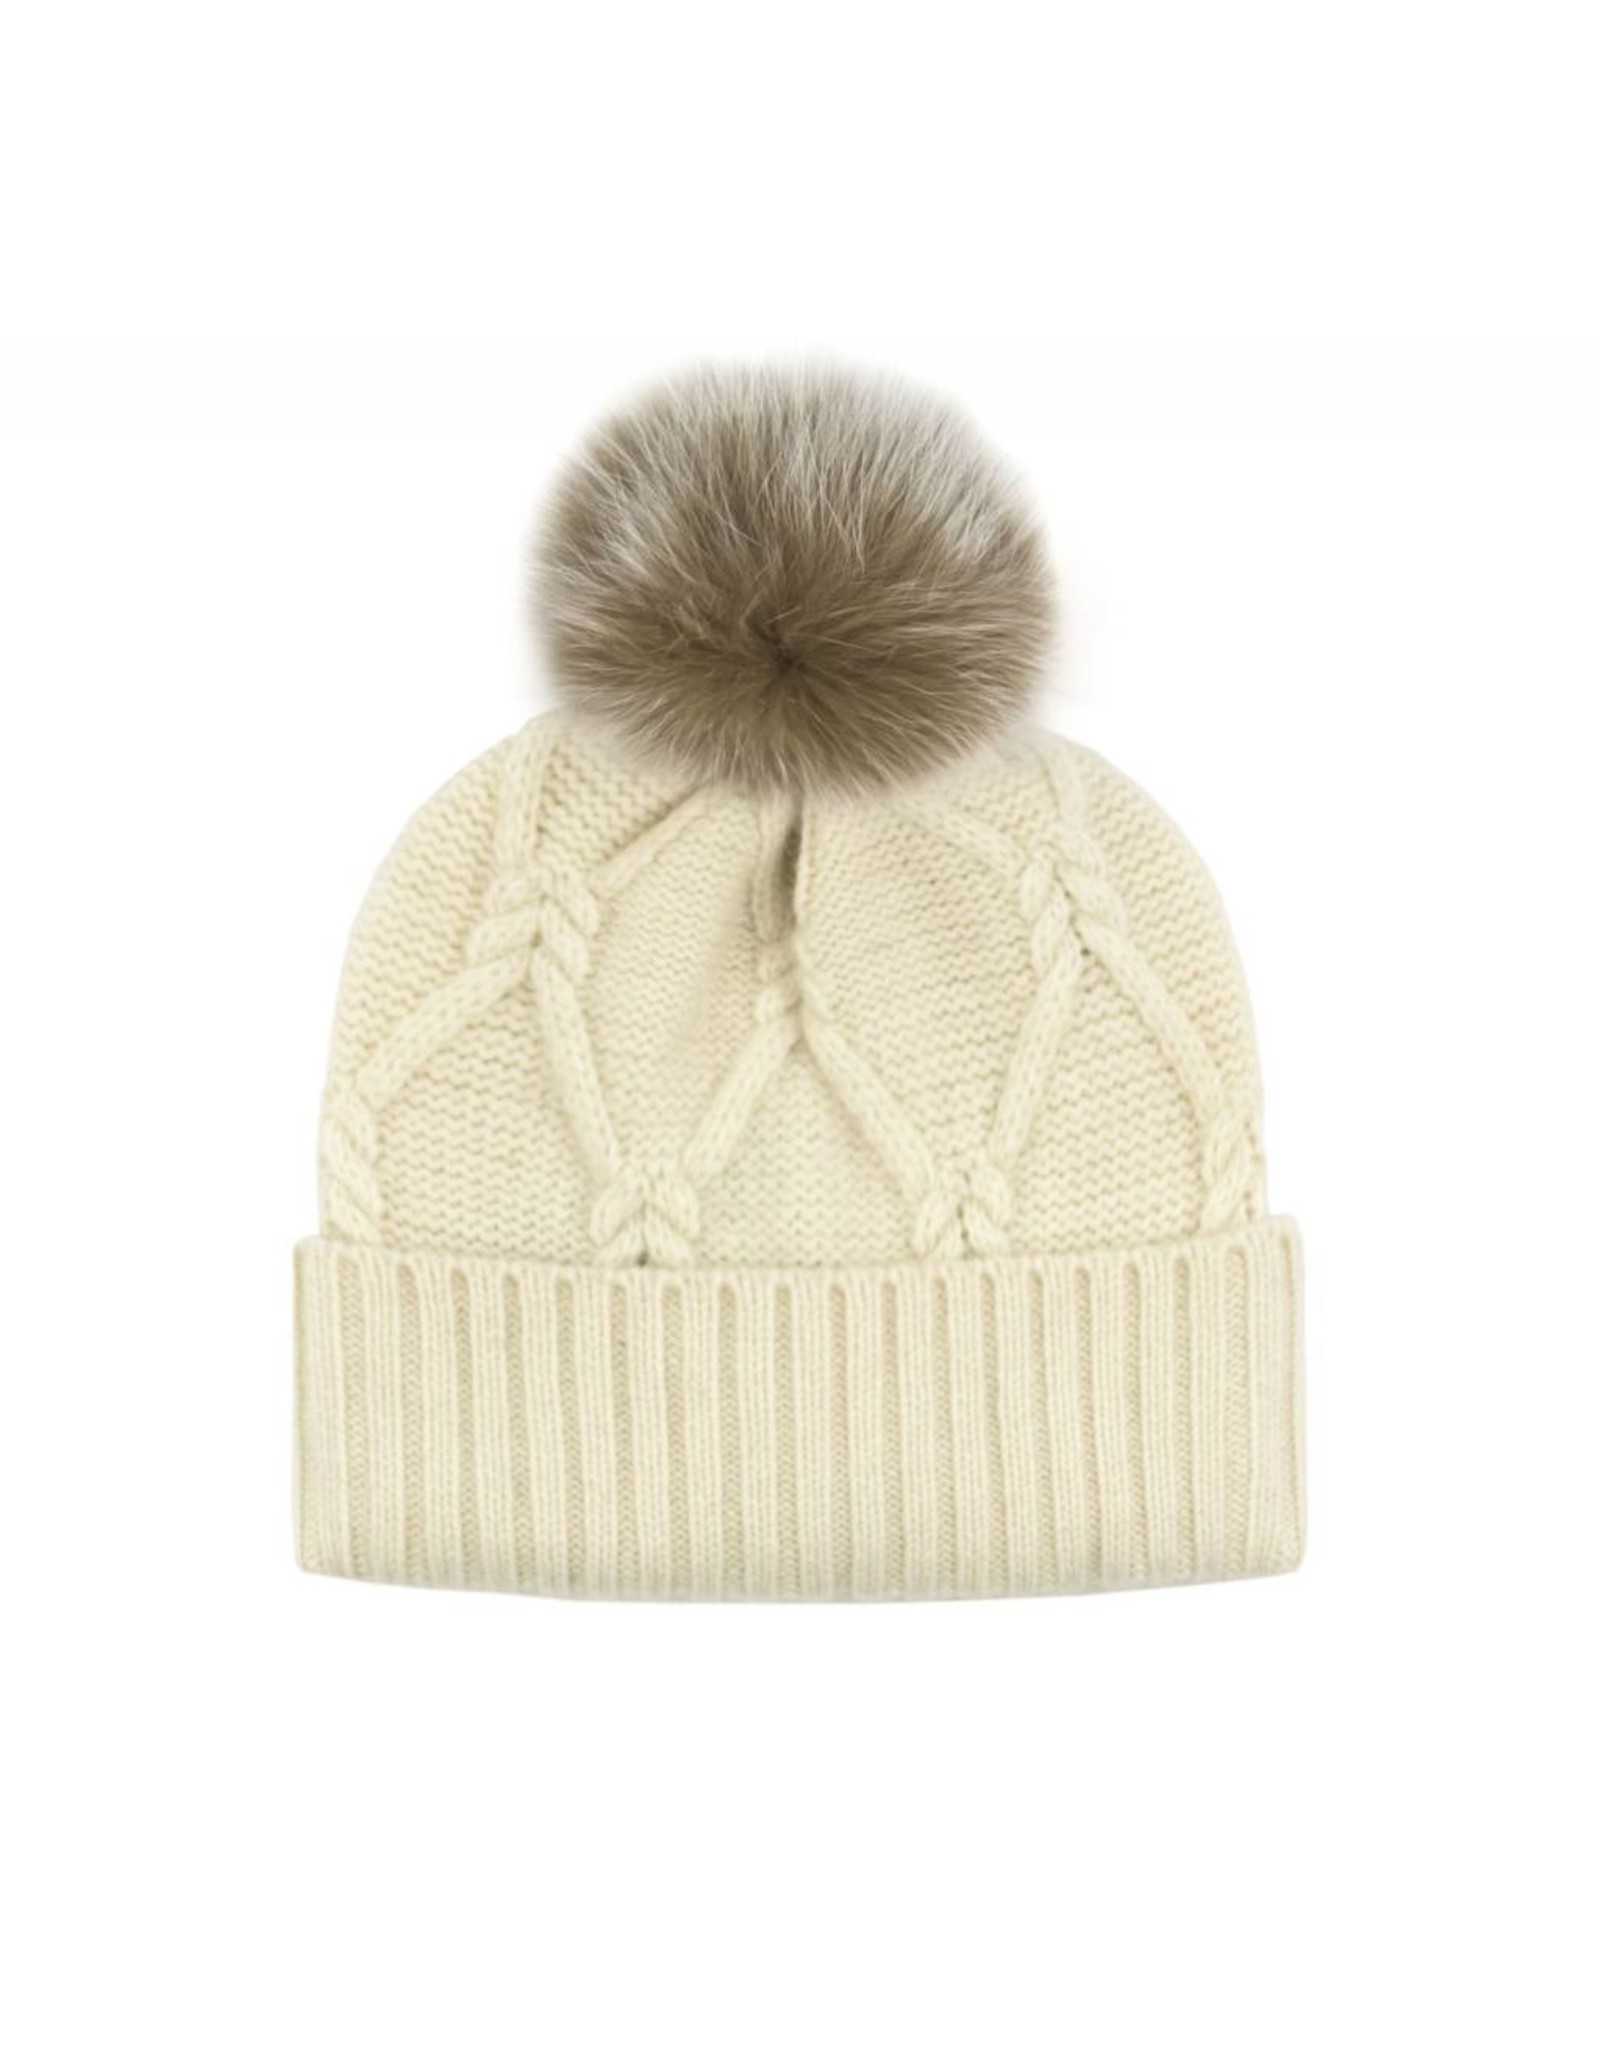 Wool Knit Hat Fox Pom-Pom